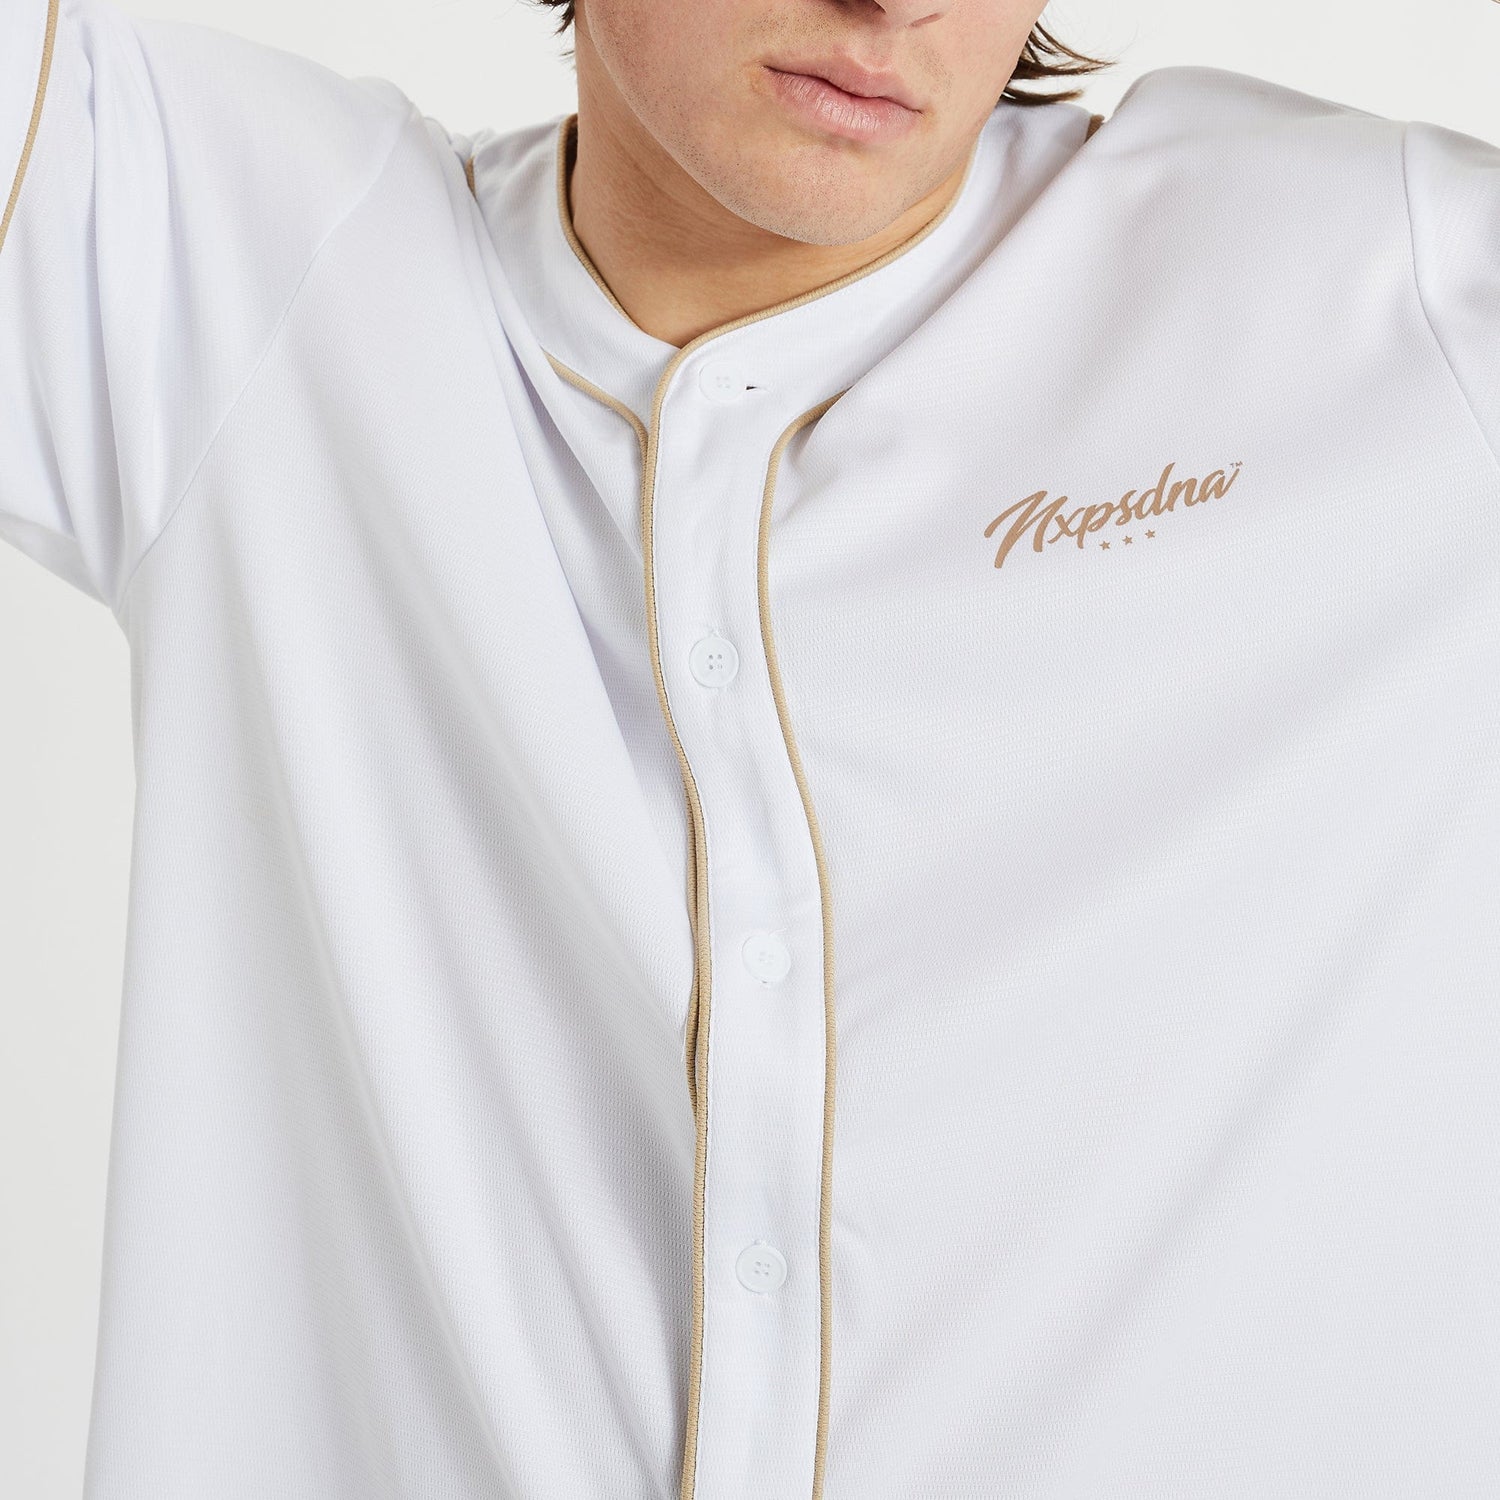 Allegiance Baseball Shirt White